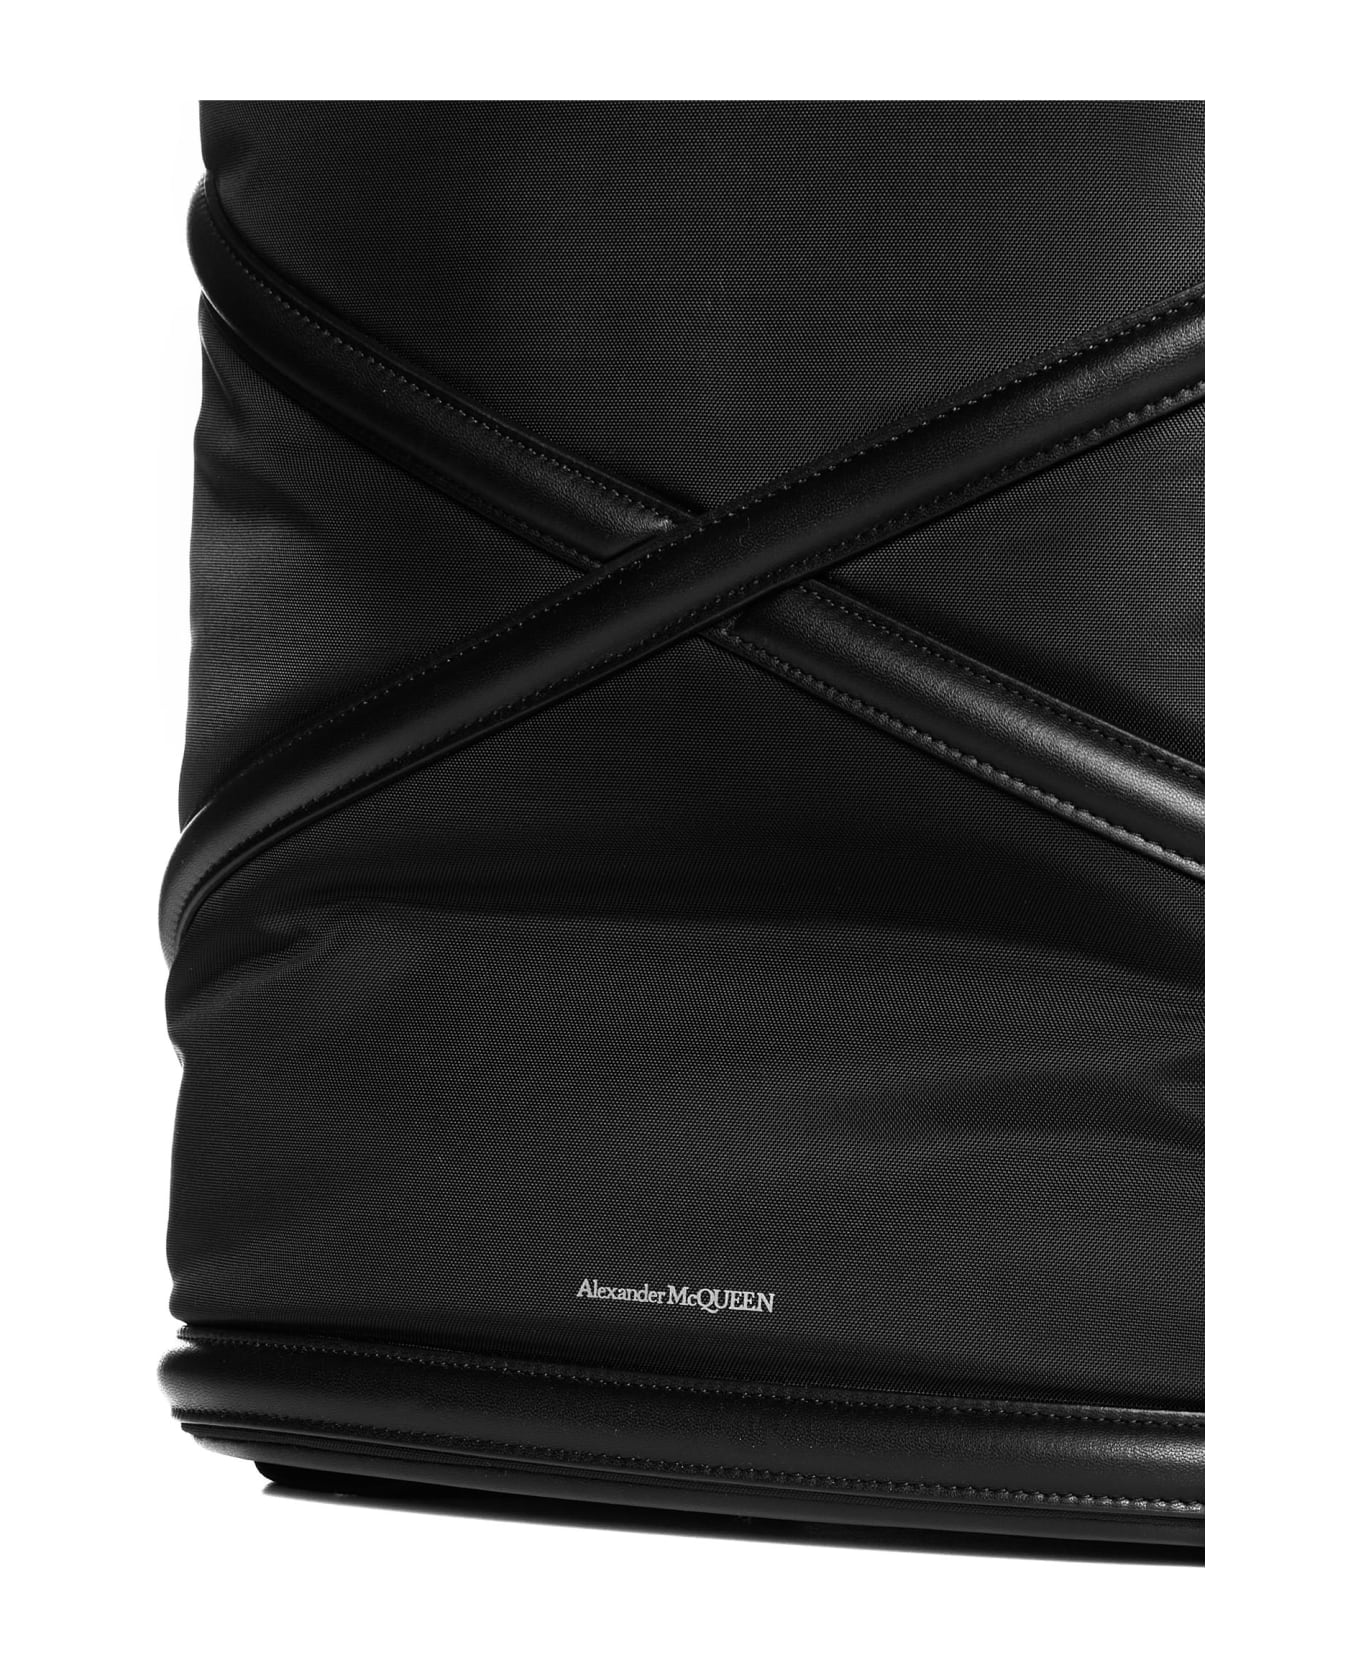 Alexander McQueen Backpack - Black